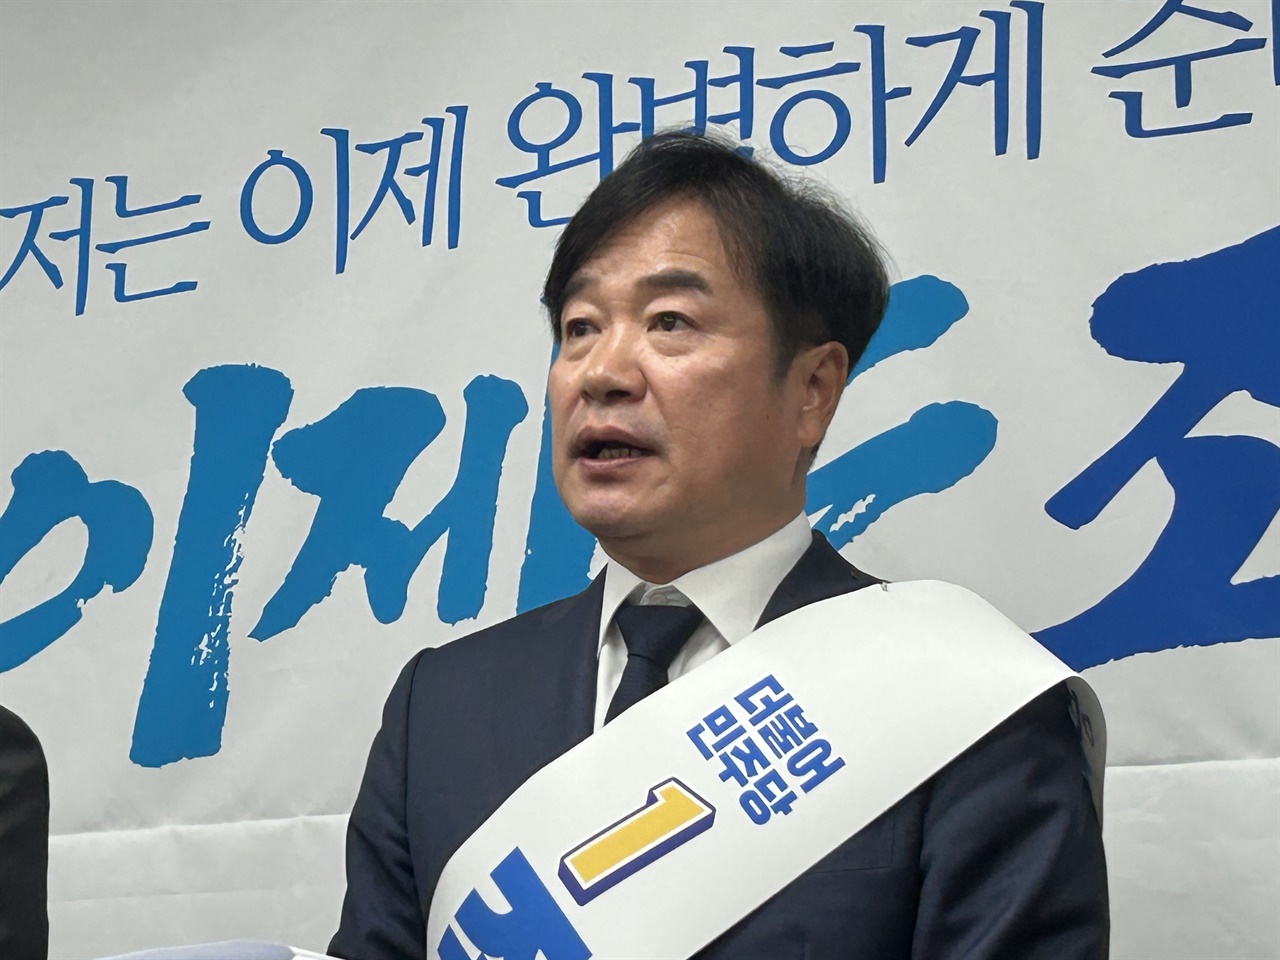 민주당 조한기 서산·태안 국회의원 예비후보가 이재명 대표의 피습과 관련해 입장문을 발표했다.